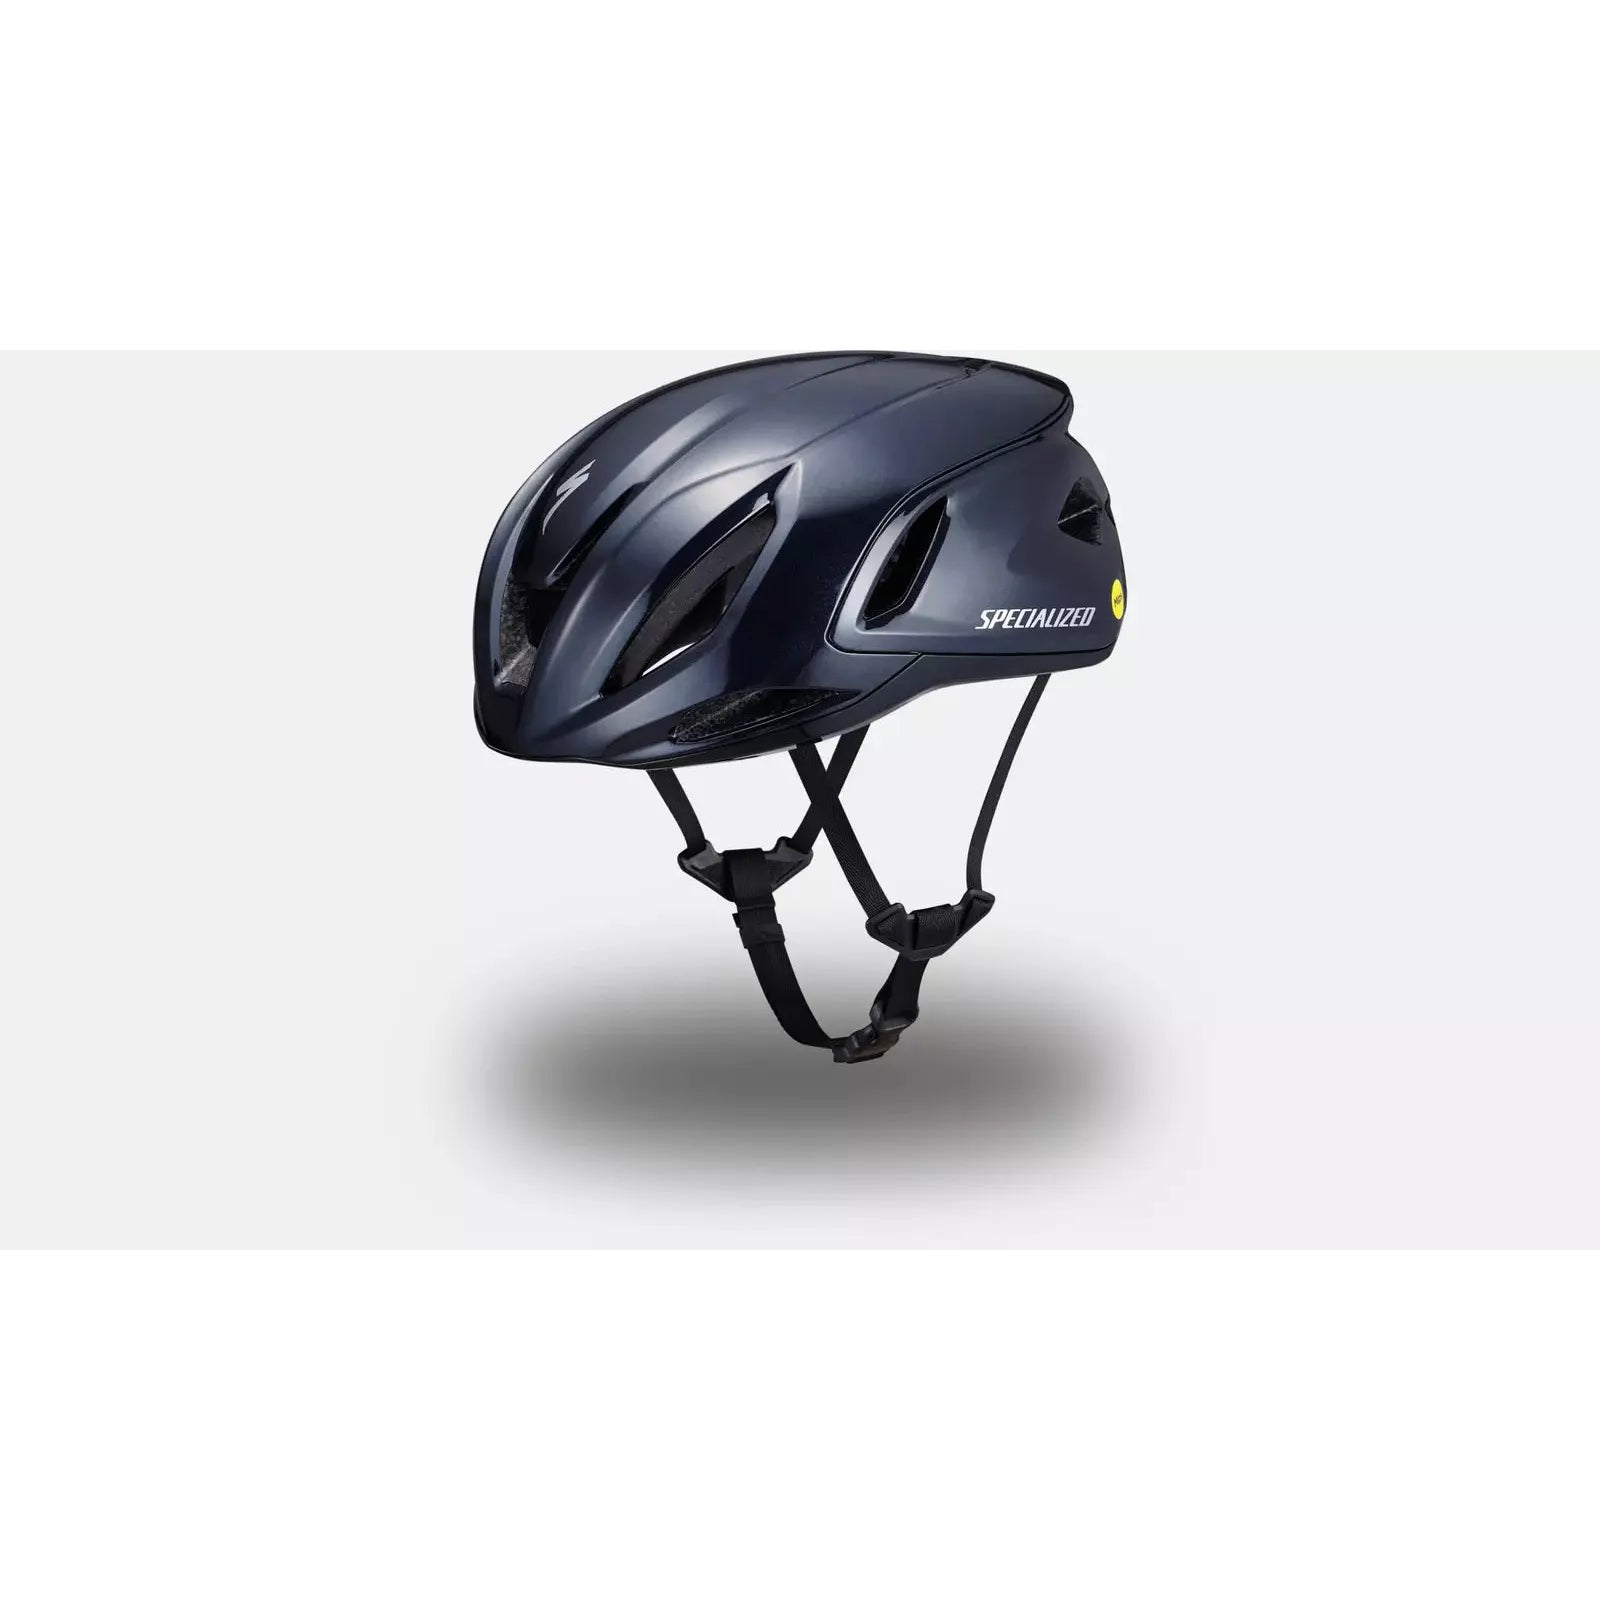 Specialized Propero 4 Helmet Dark Navy Metallic